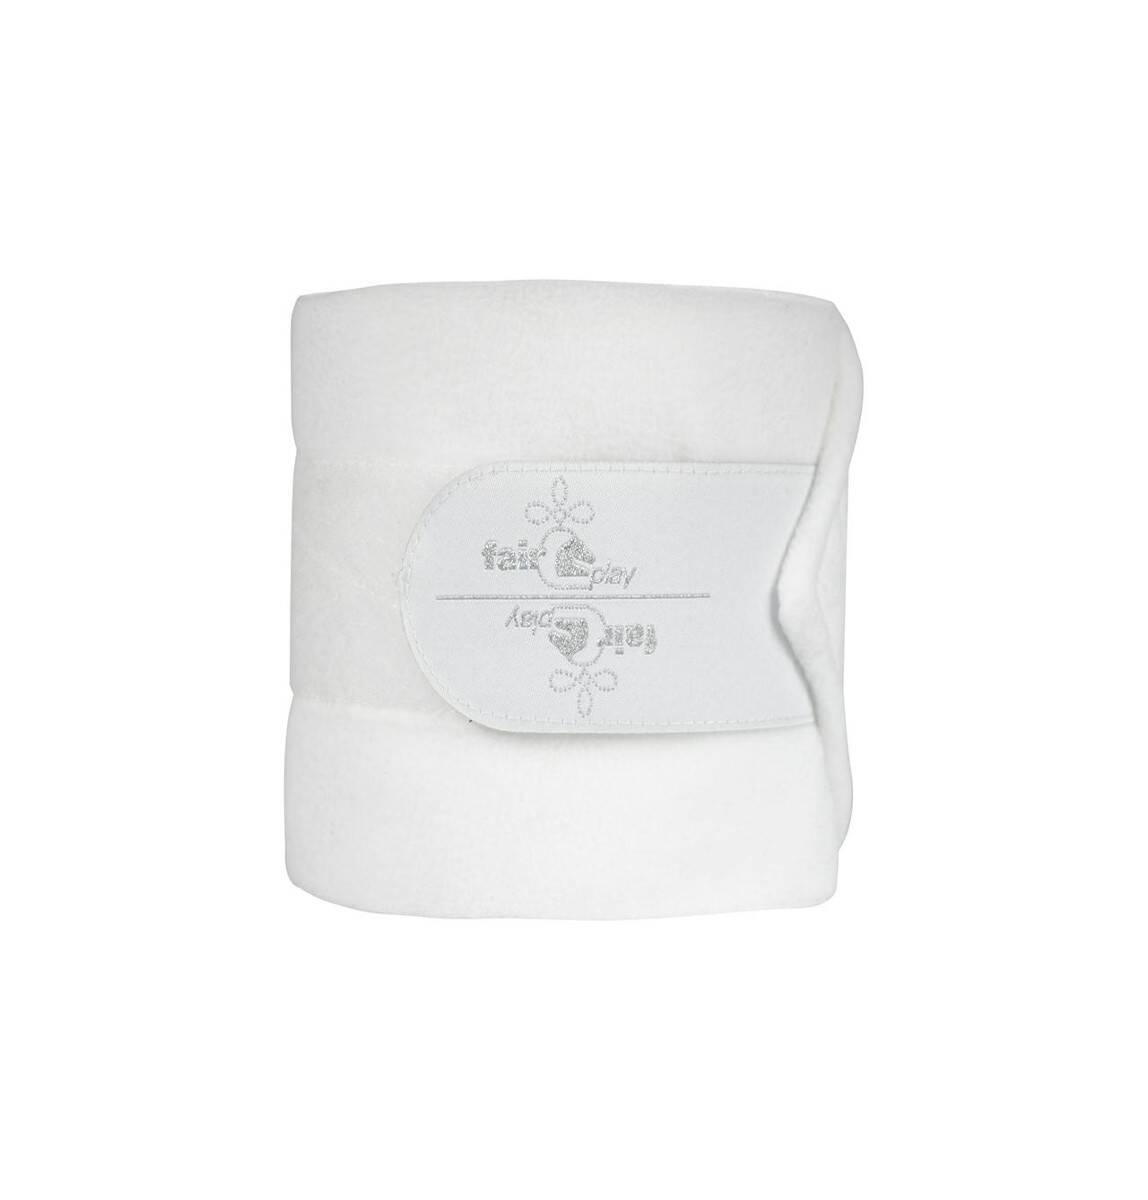 Bandaże FP CRUX biały, kompl. 4 szt.